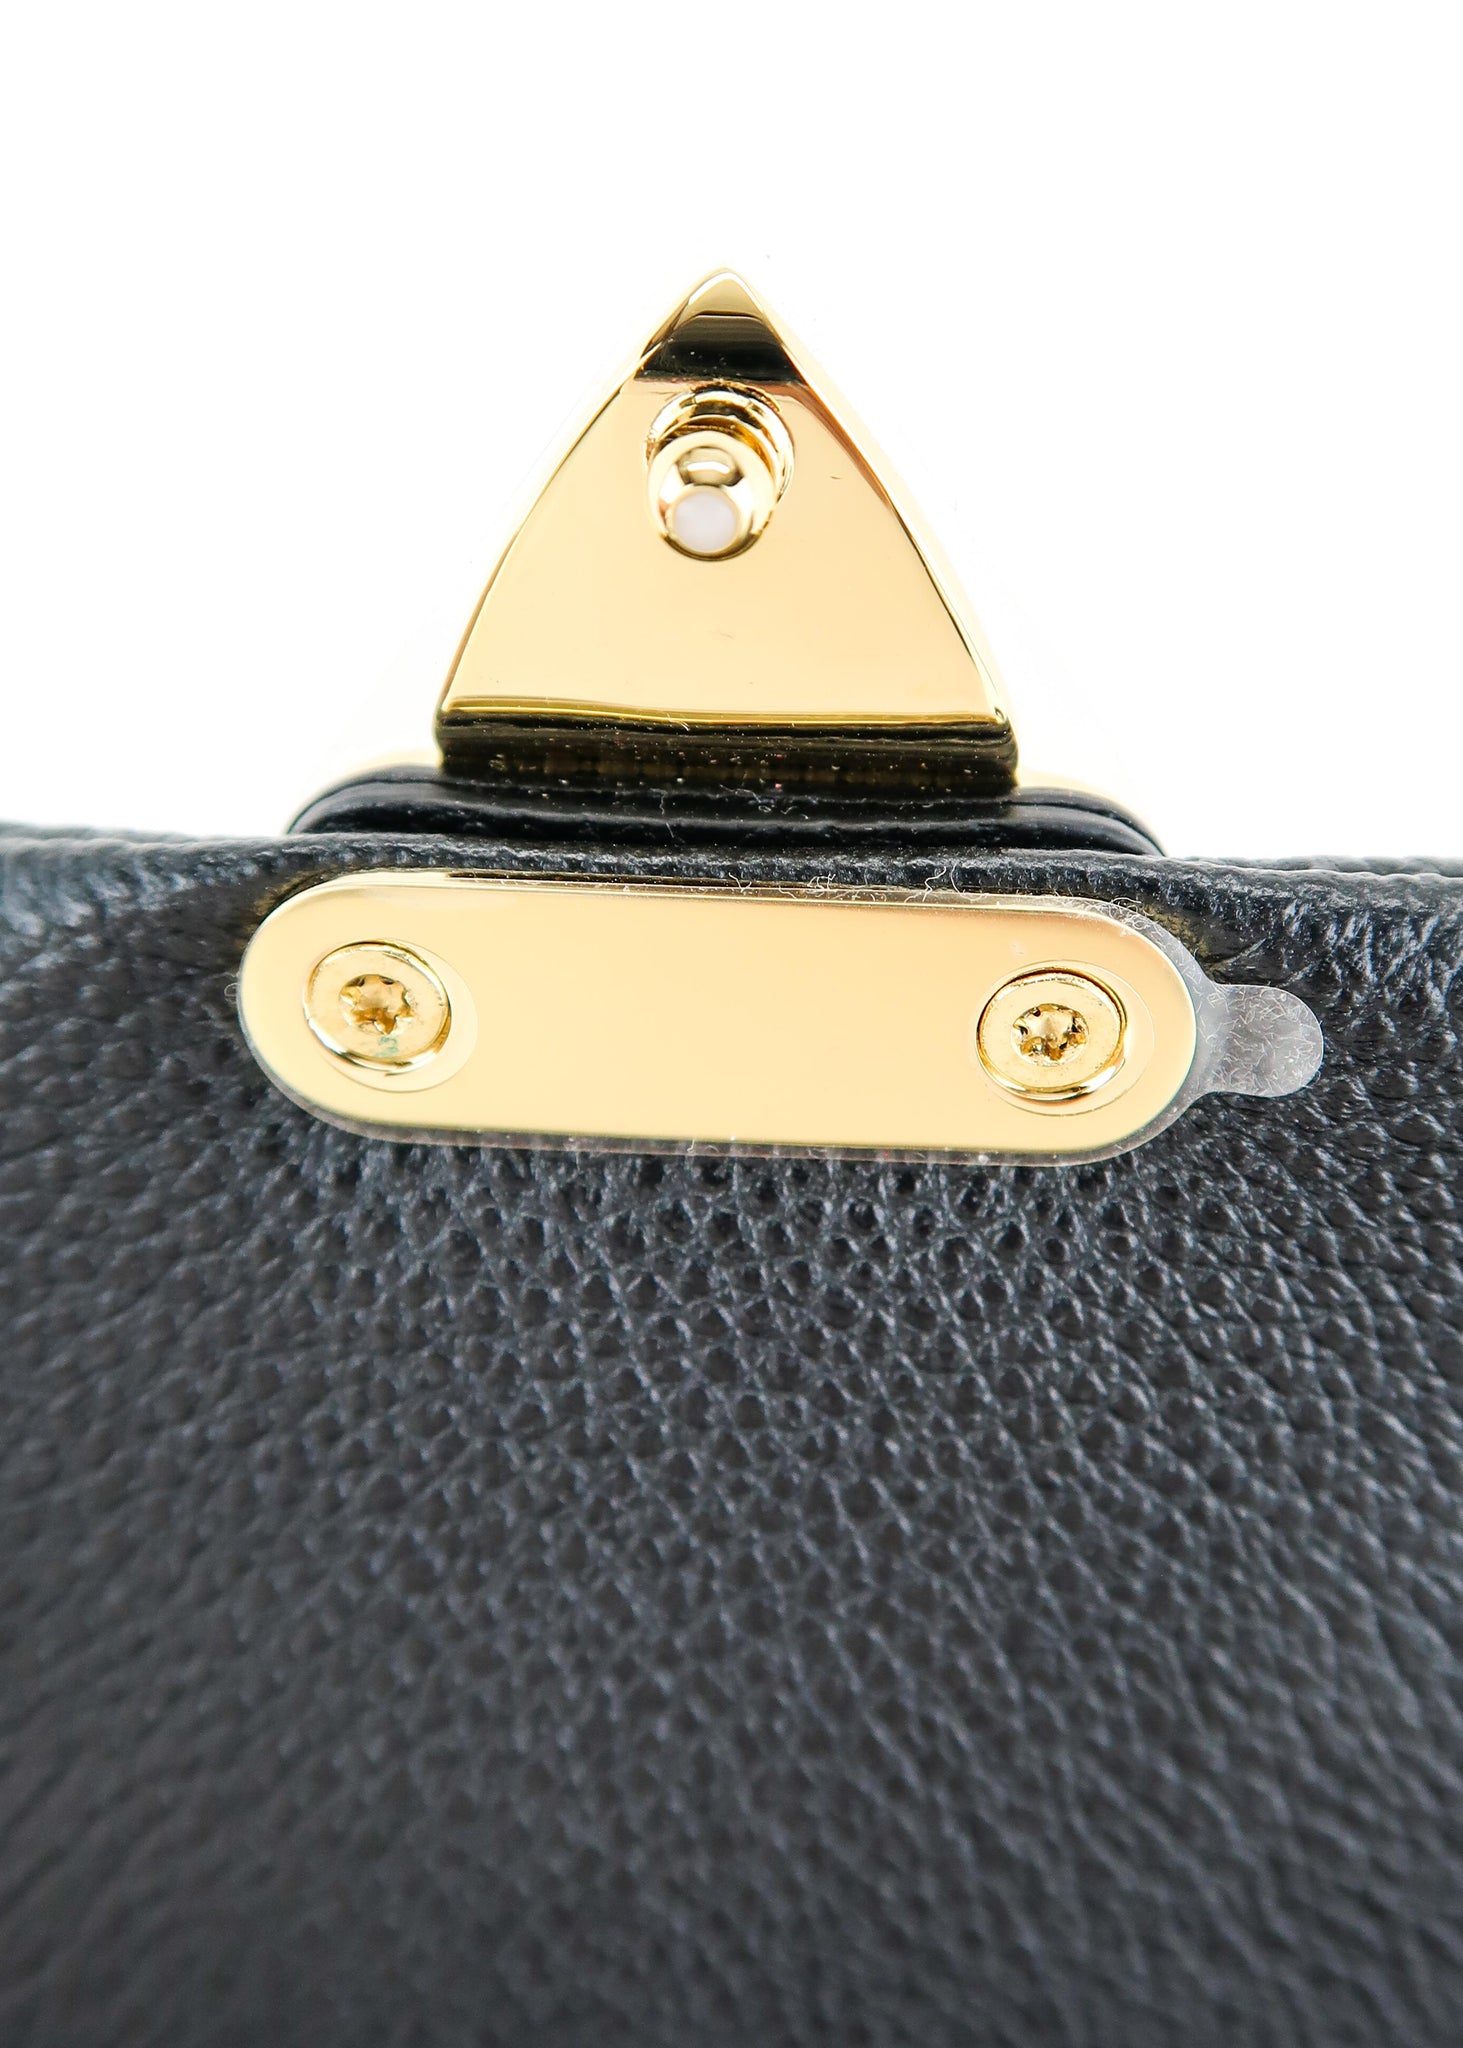 Louis Vuitton Madeleine BB Creme Bag - תיק של לואי ויטון - בראנדסיטי